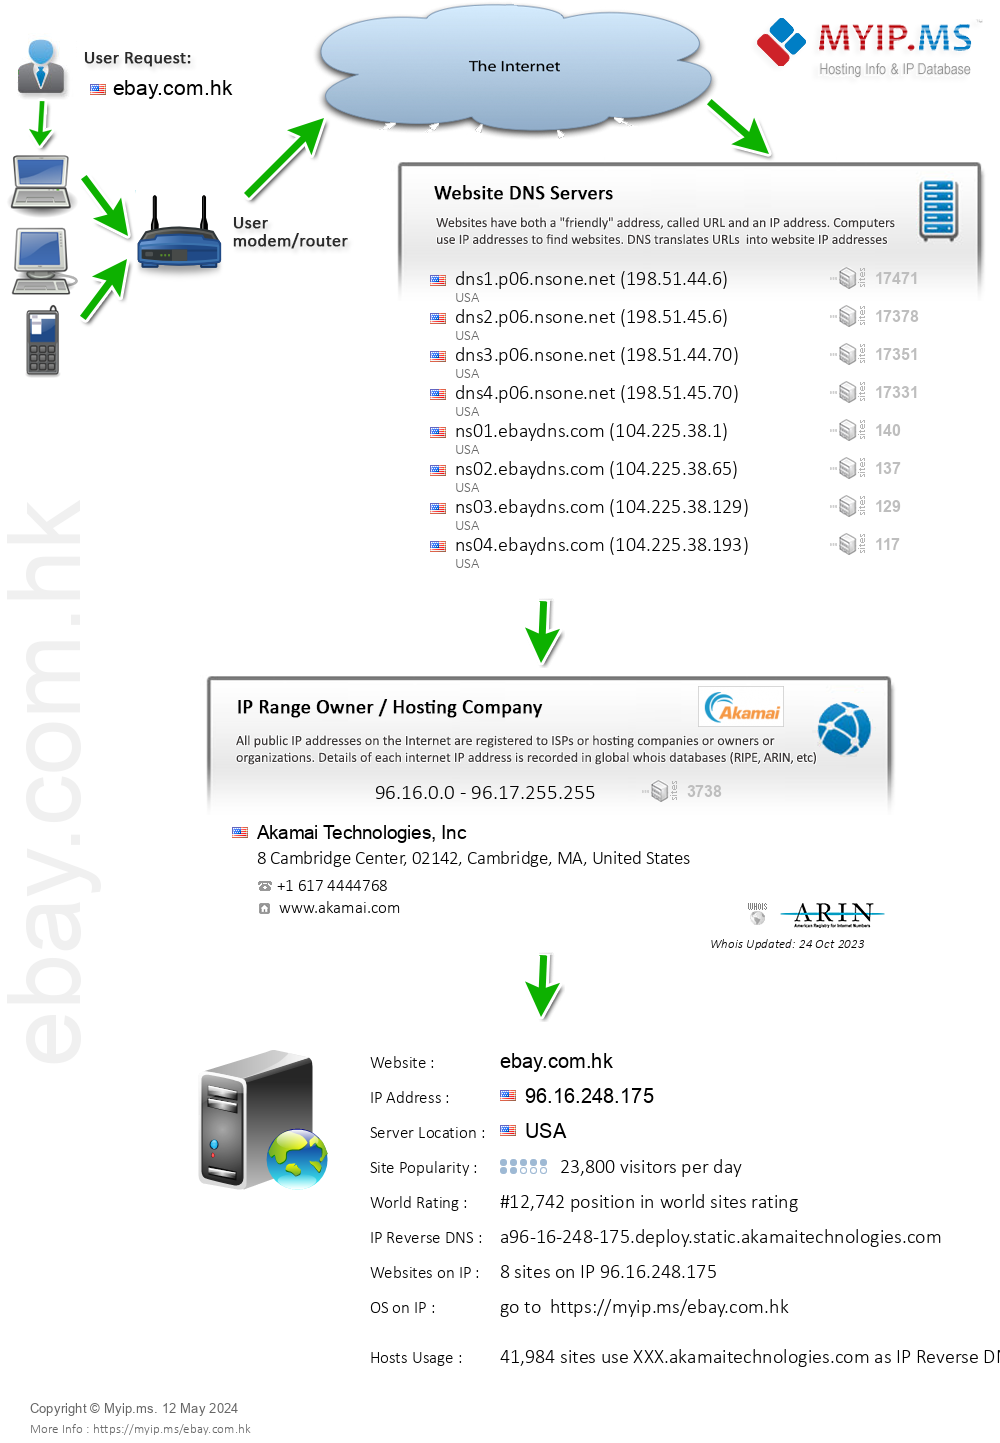 Ebay.com.hk - Website Hosting Visual IP Diagram